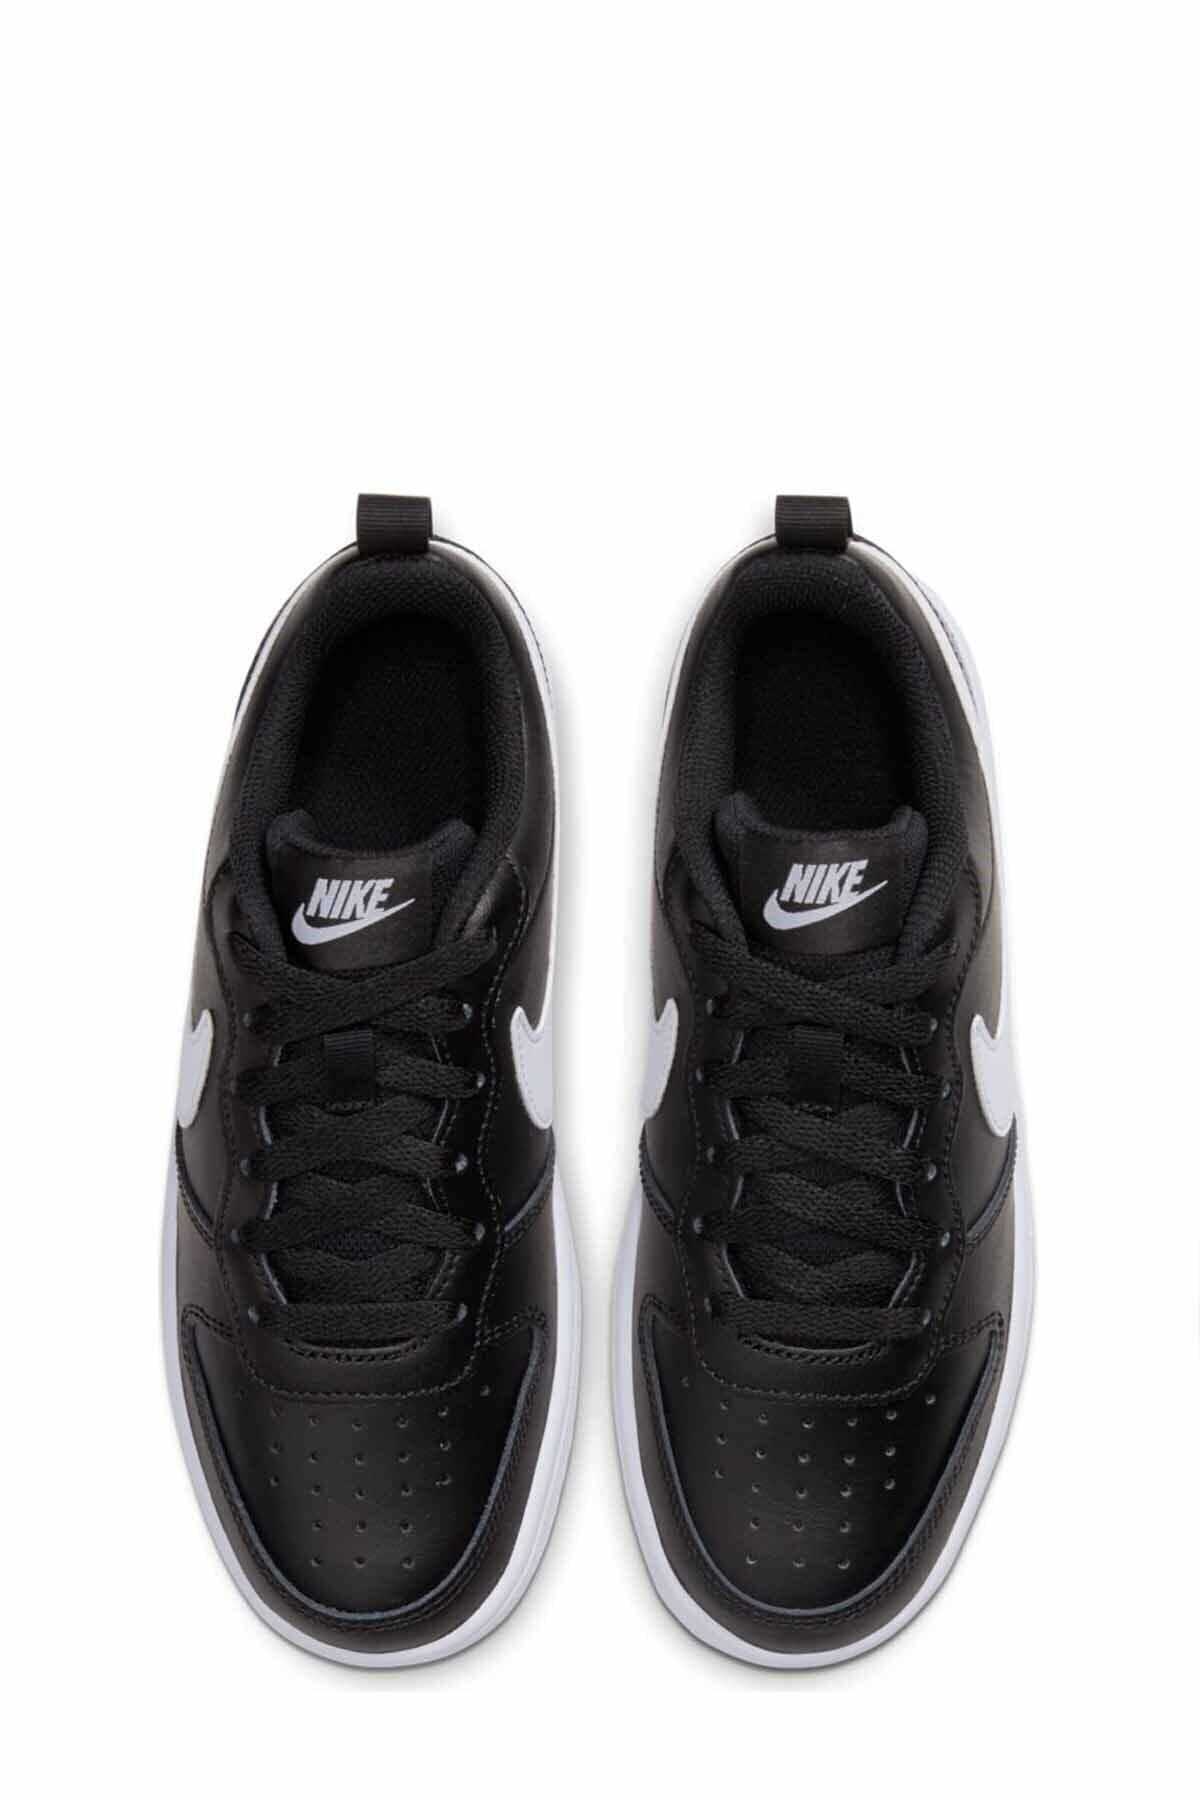 خرید پستی کفش مخصوص پیاده روی زنانه شیک شیک Nike اورجینال کد ty34595576